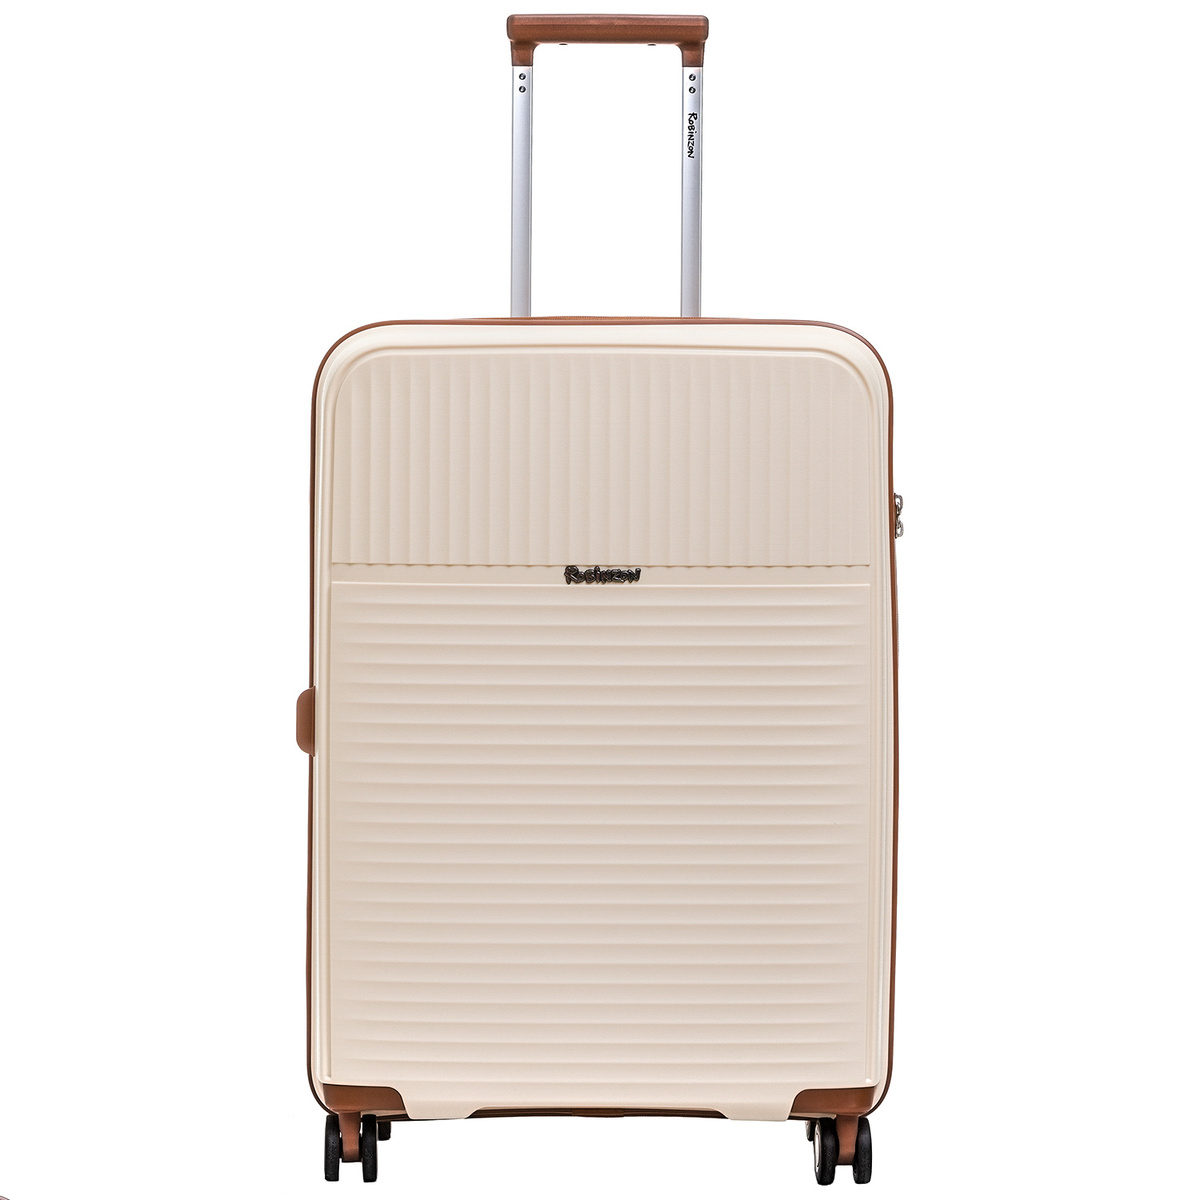 Размер чемодана средний M(56-70 см), что оптимально для путешествий на одну-две недели.